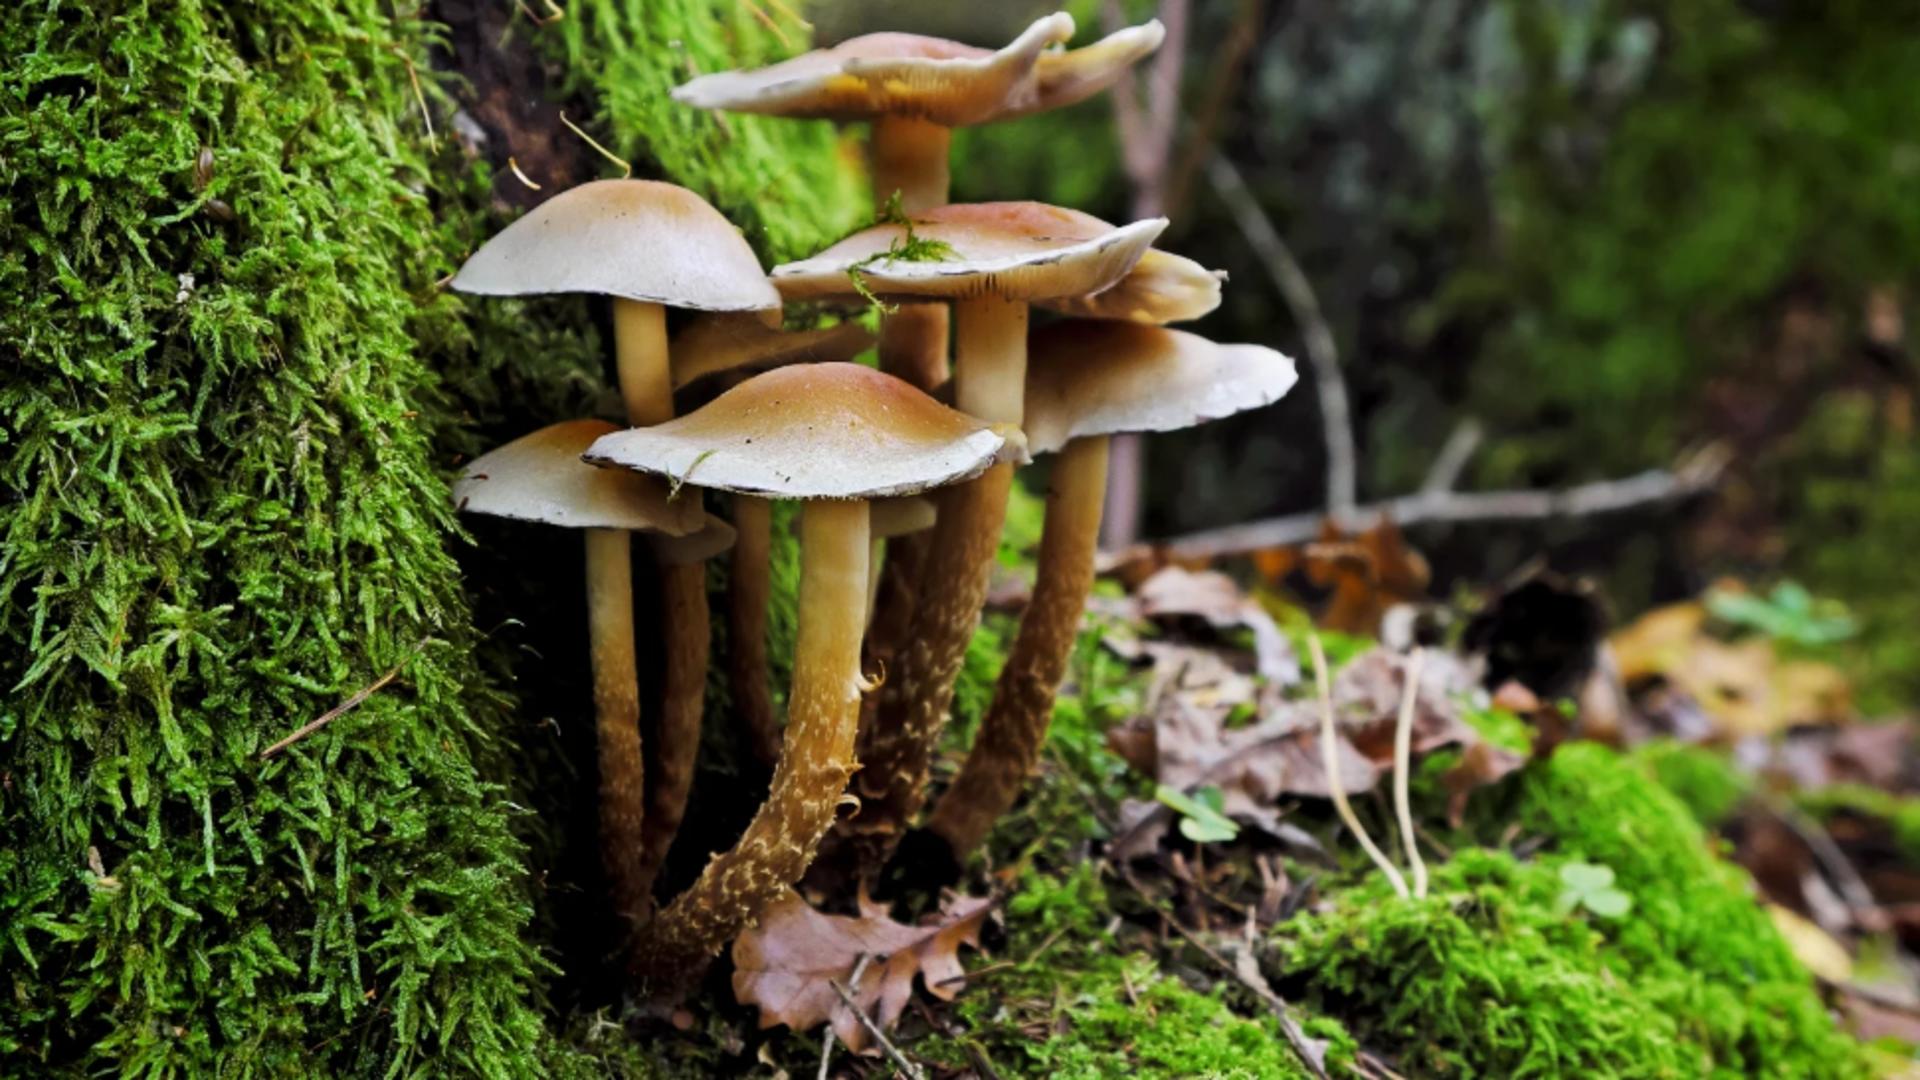 Cinci copii au ajuns la spital cu simptome grave de intoxicație după ce au mâncat ciuperci culese din pădure